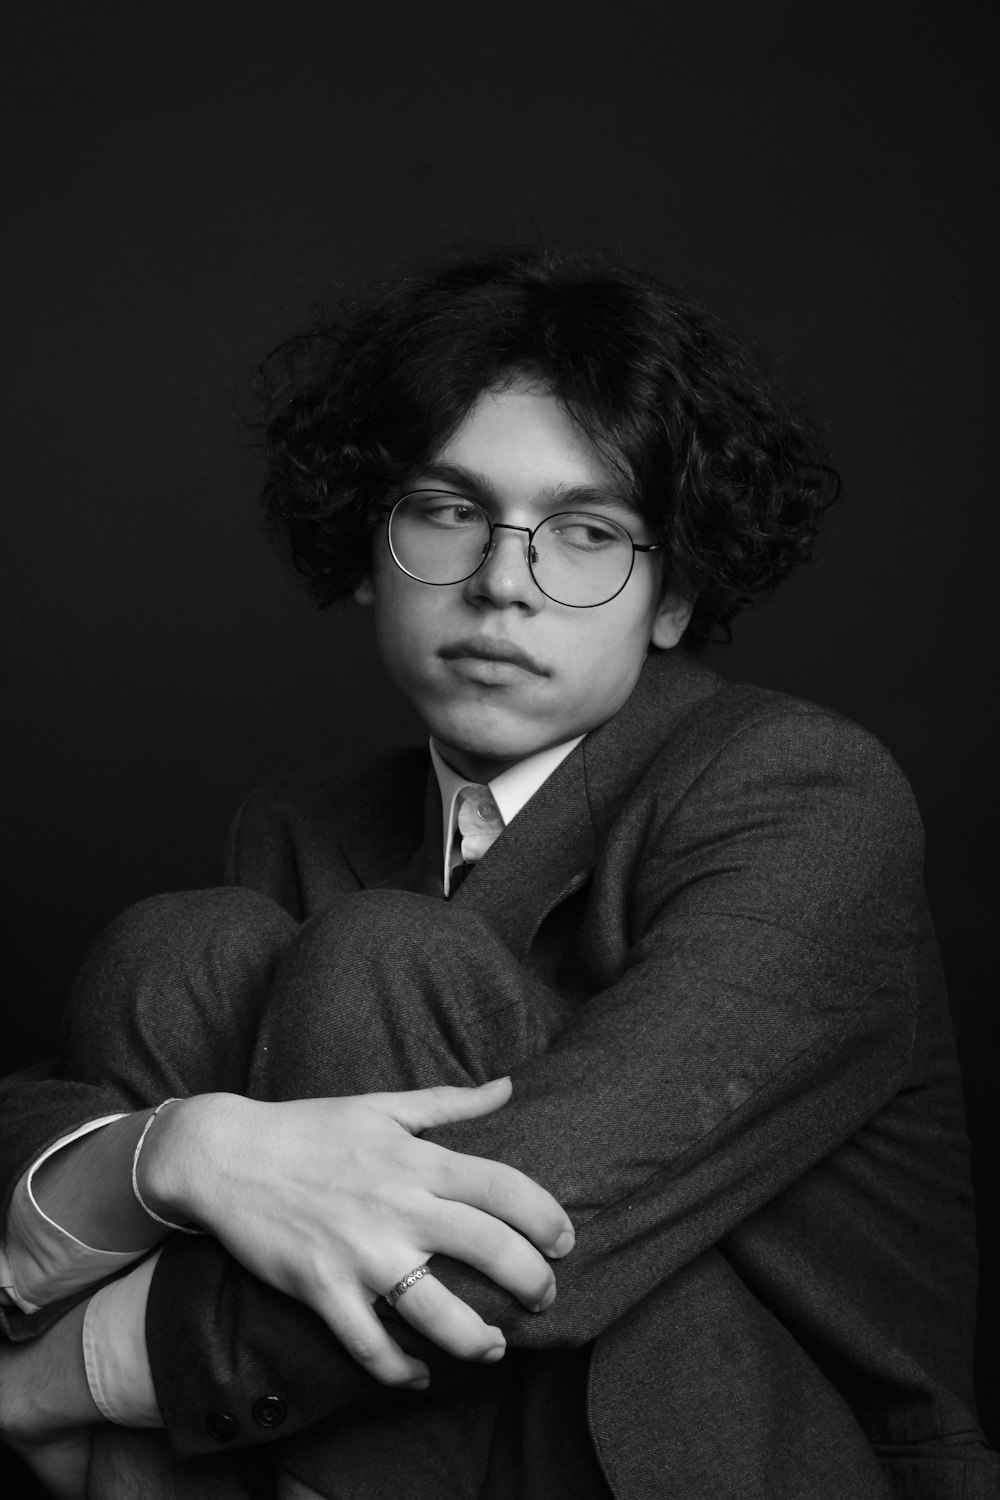 Une photo en noir et blanc d’un homme avec des lunettes